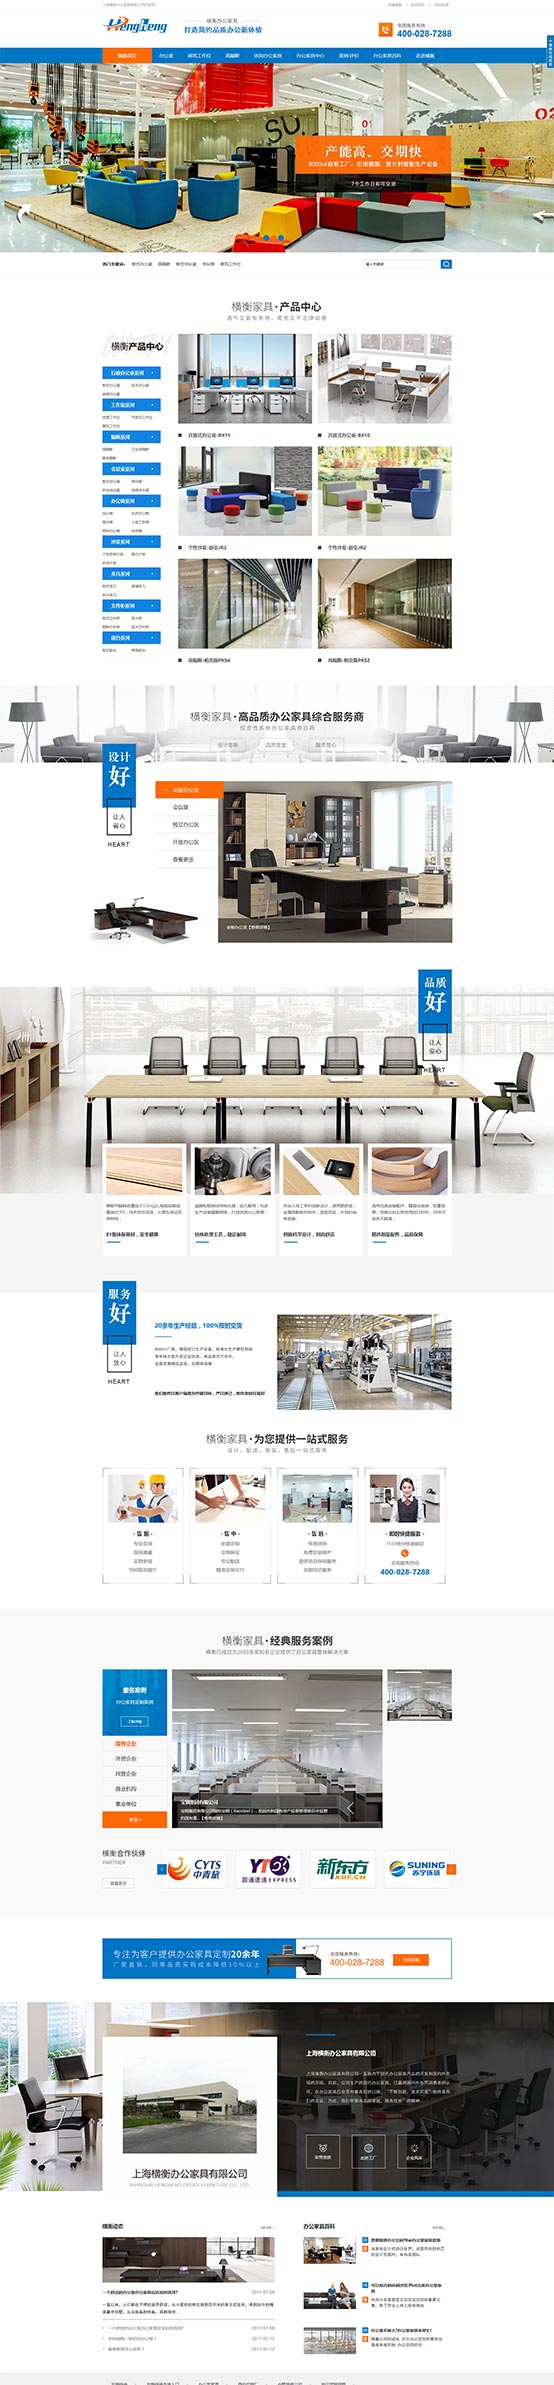 上海横衡家具营销型网站建设案例1